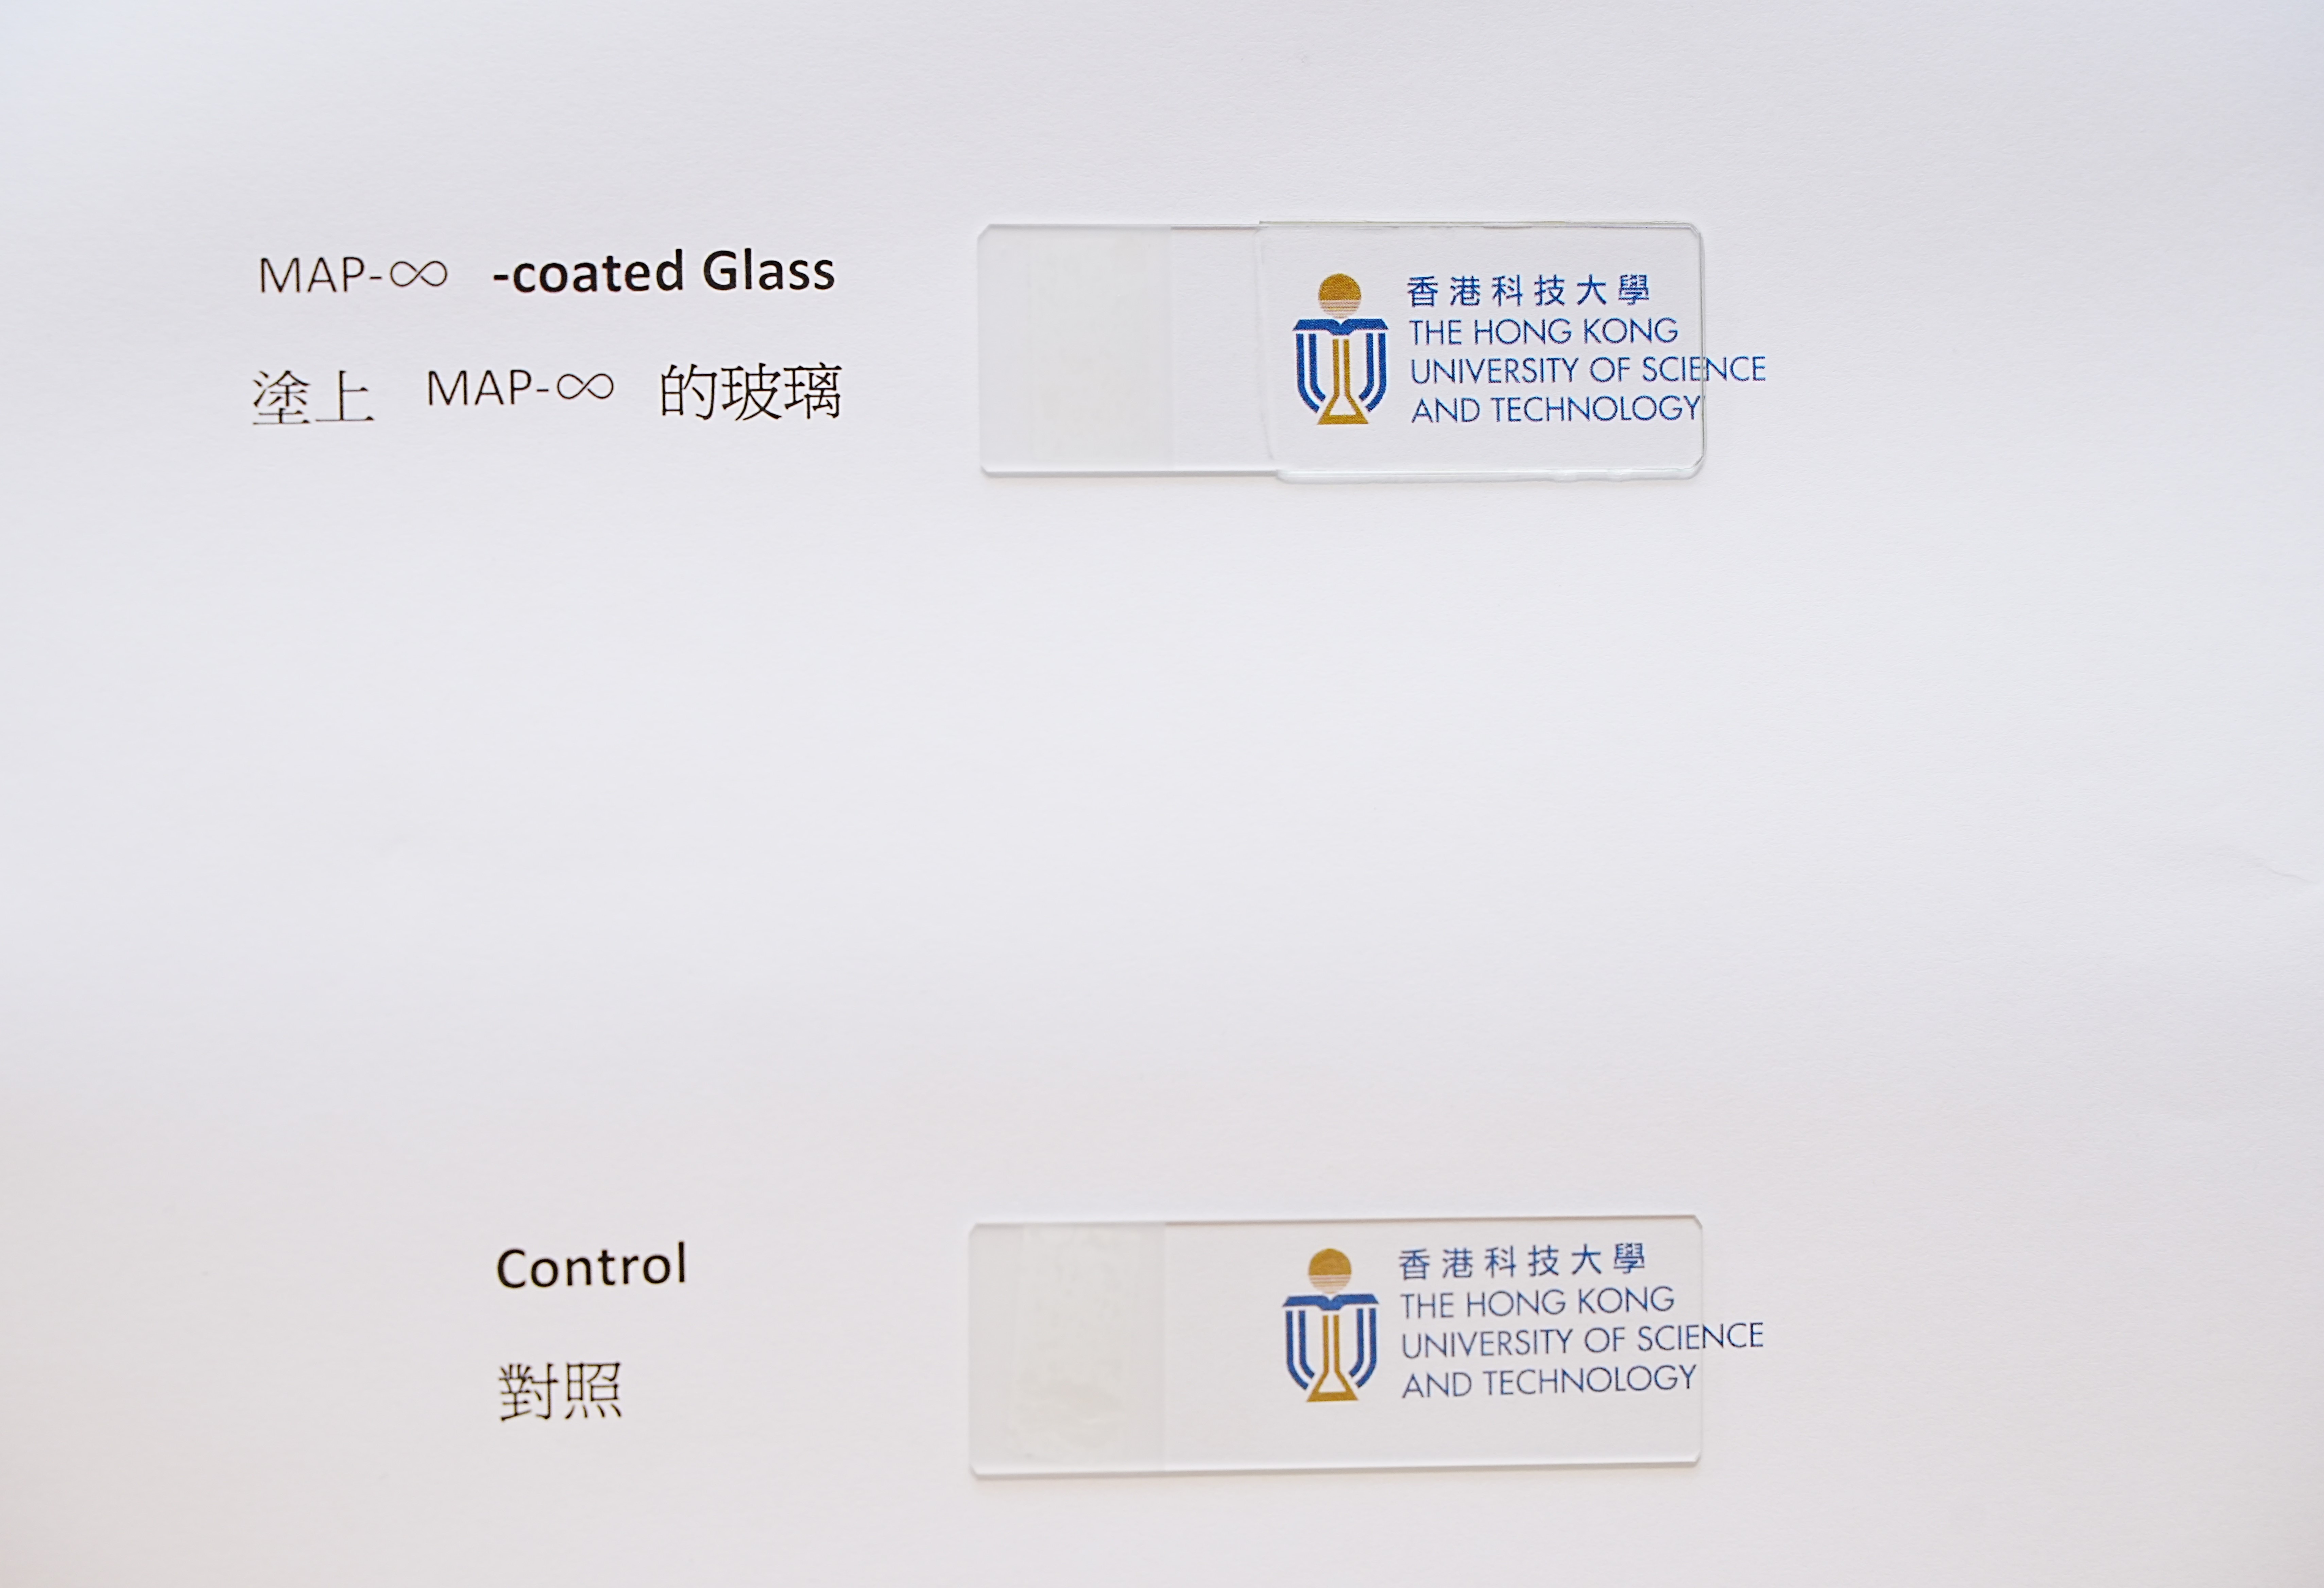 MAP-∞的高透光度让涂层能应用到在玻璃表面上而不会影响其透明度。